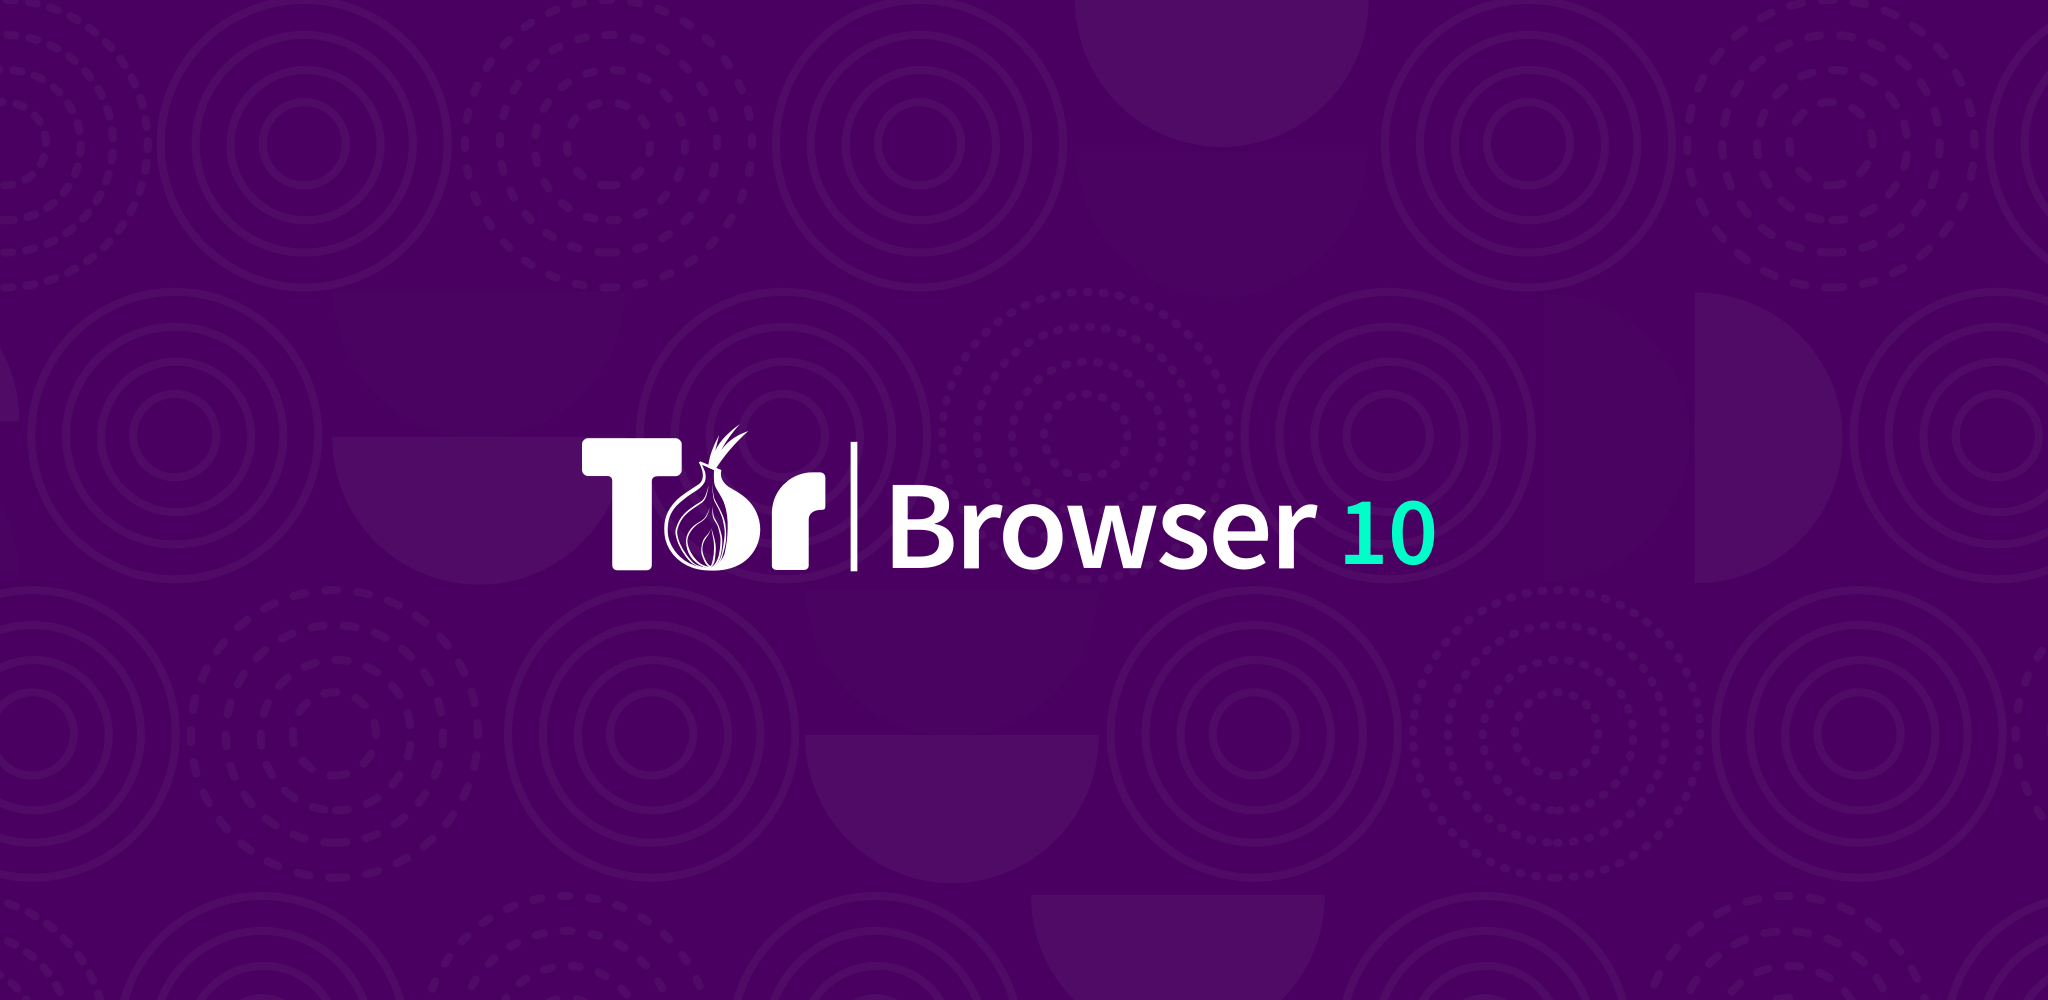 Tor browser для 64 бит скачать hydra2web как установить тор браузер на дебиан гирда